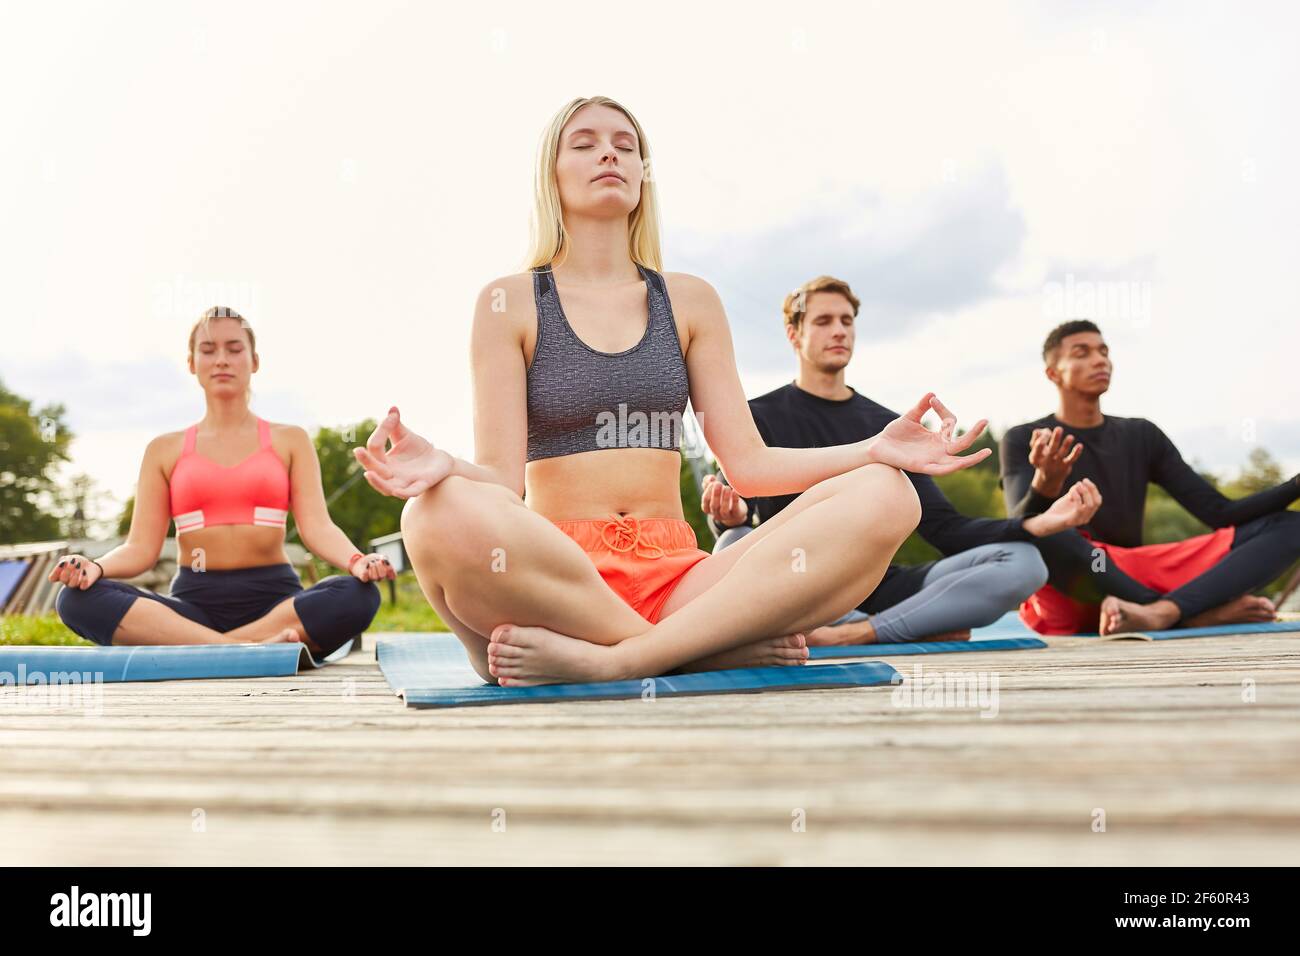 Groupe de jeunes appréciant une méditation zen dans un atelier de yoga dans la nature Banque D'Images